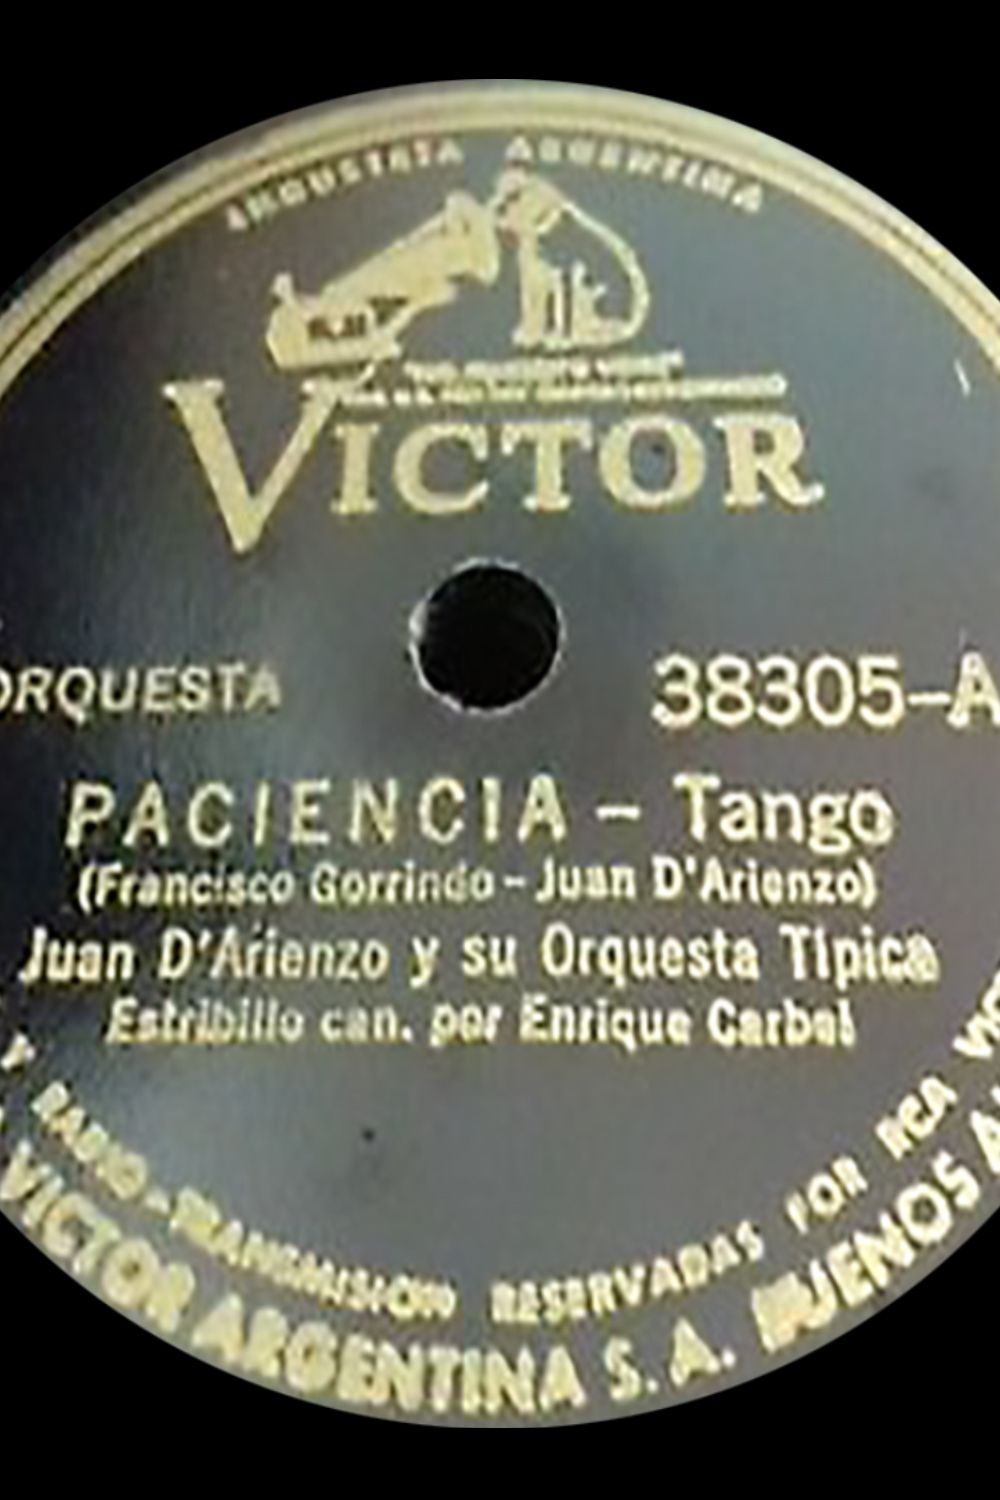 "Paciencia", Argentine Tango music vinyl disc.